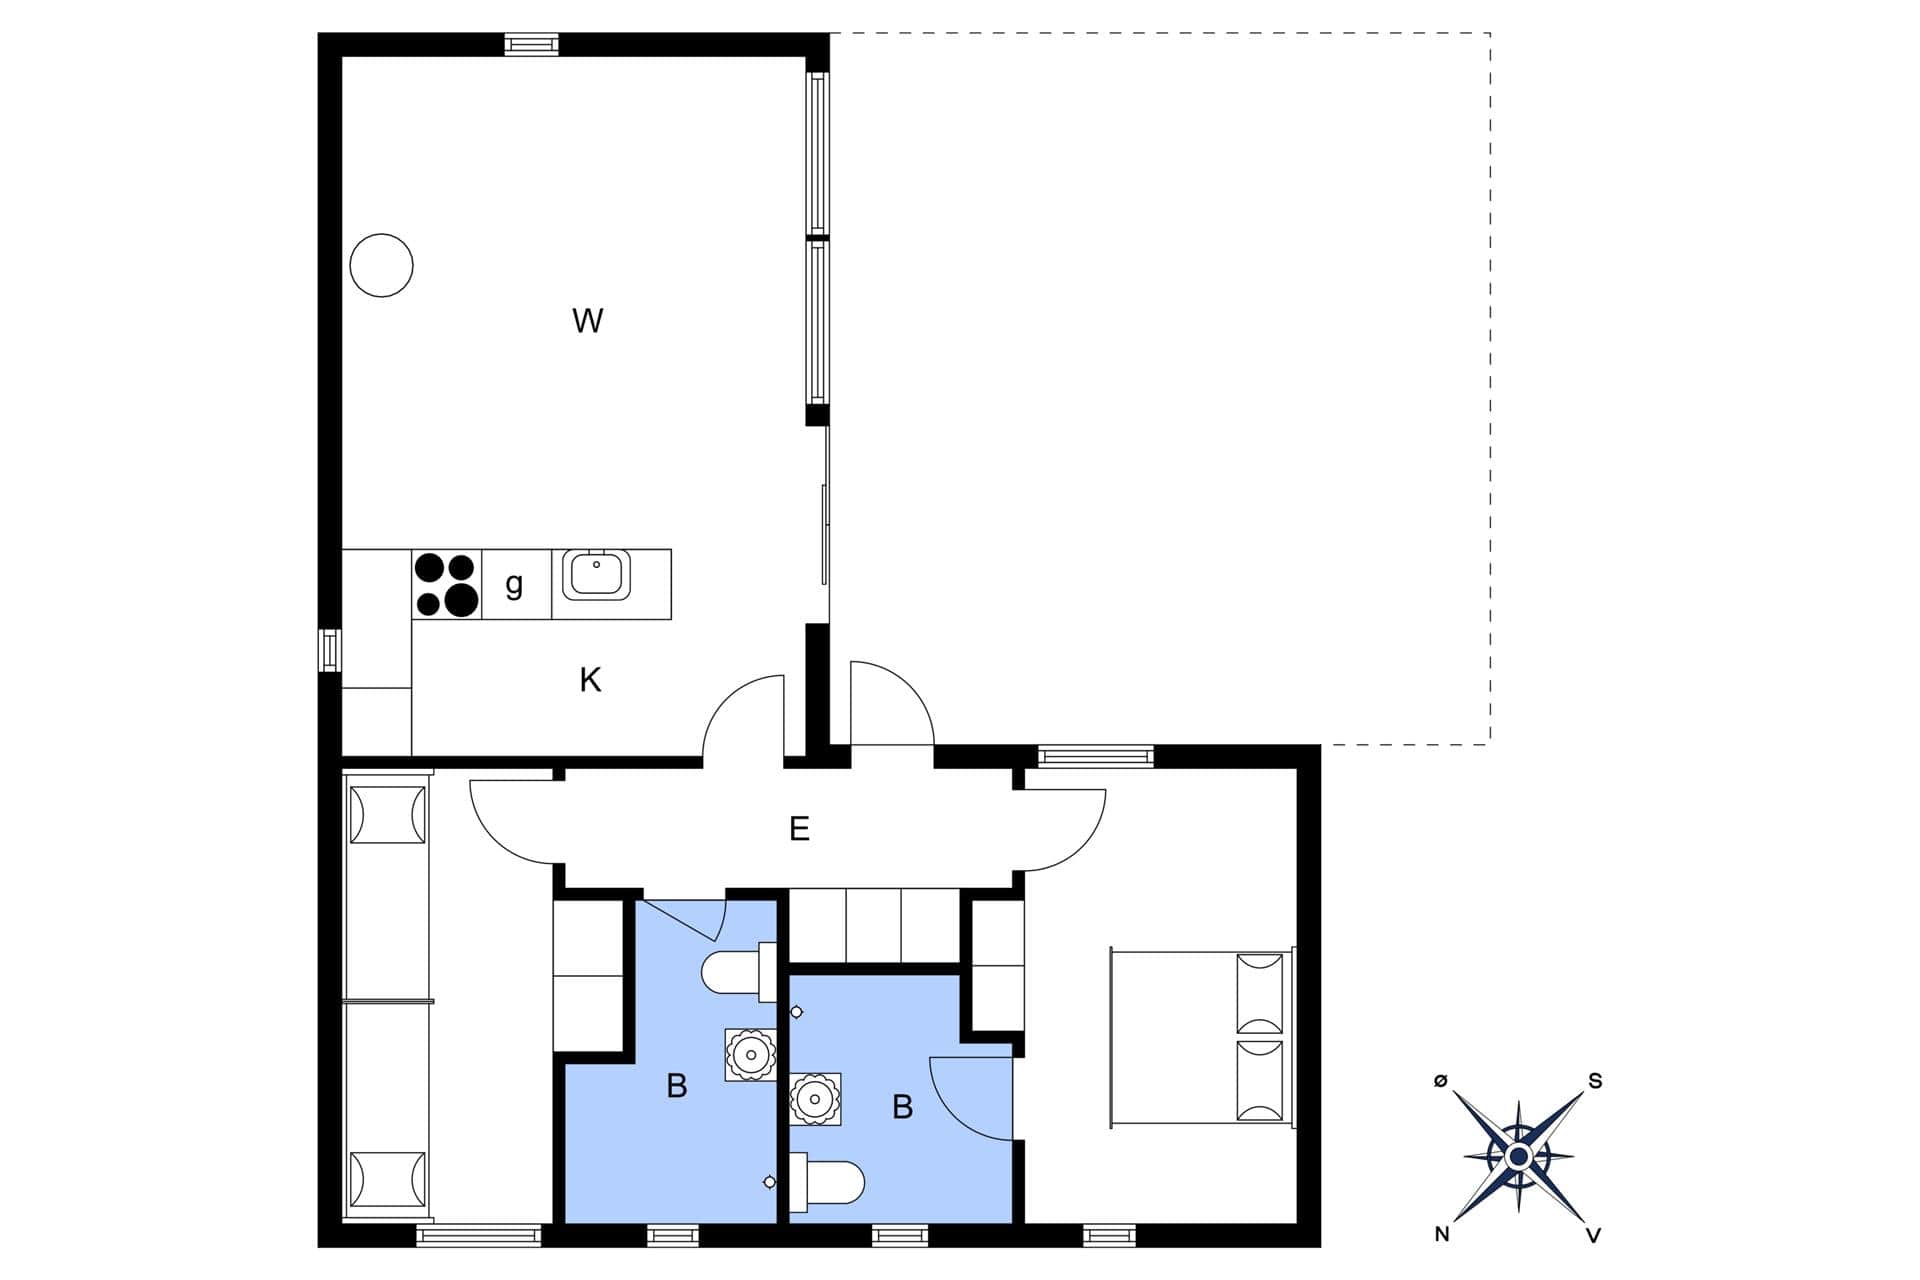 Interior 3-3 Holiday-home M642753, Oddevejen 8, DK - 5500 Middelfart